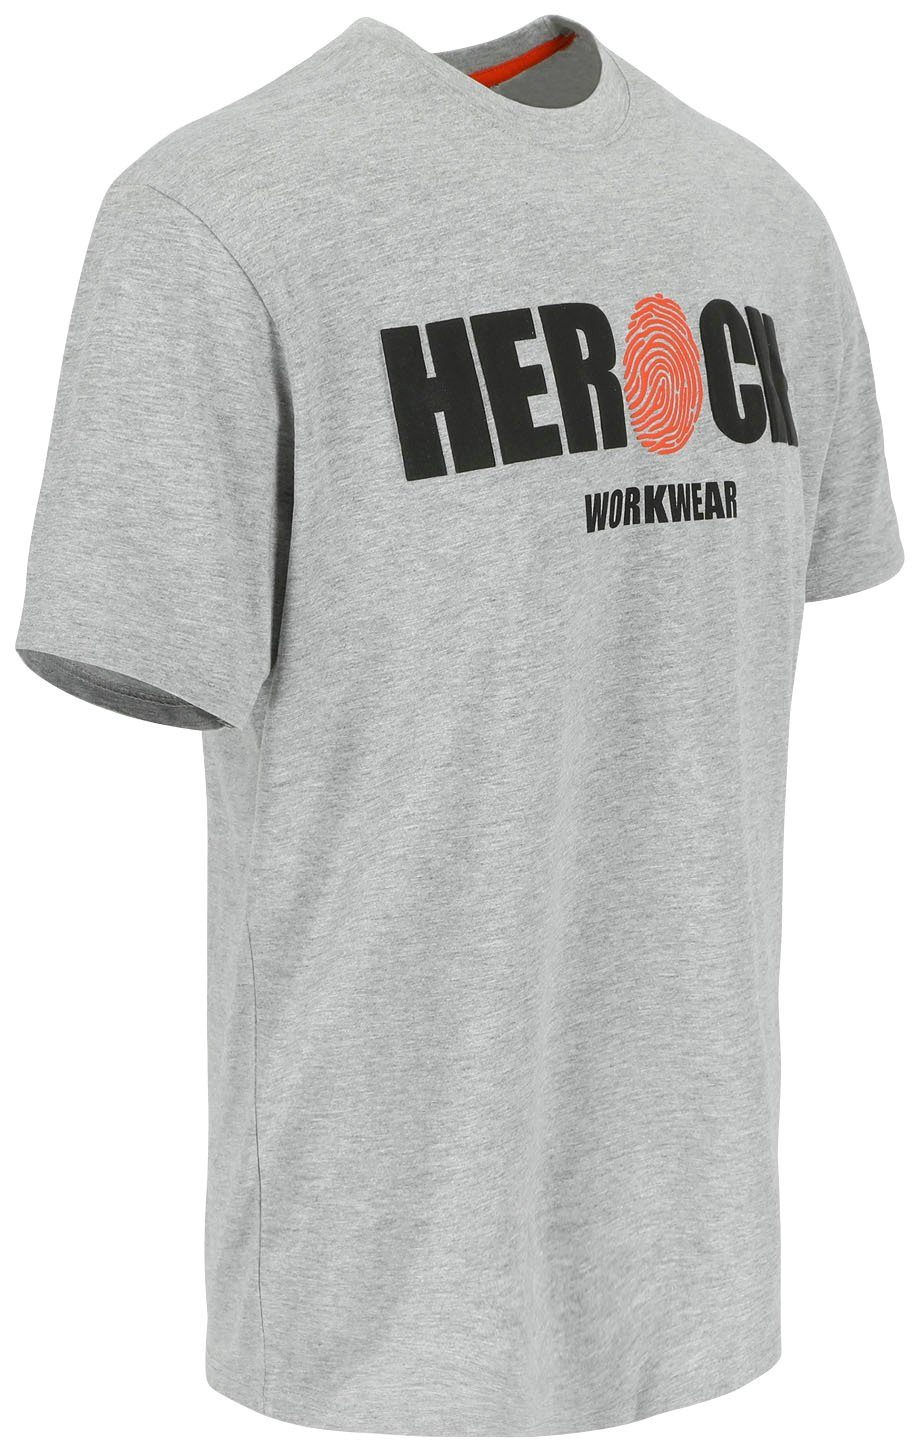 Herock T-Shirt ENI Baumwolle, Herock®-Aufdruck, grau mit Rundhals, angenehmes Tragegefühl